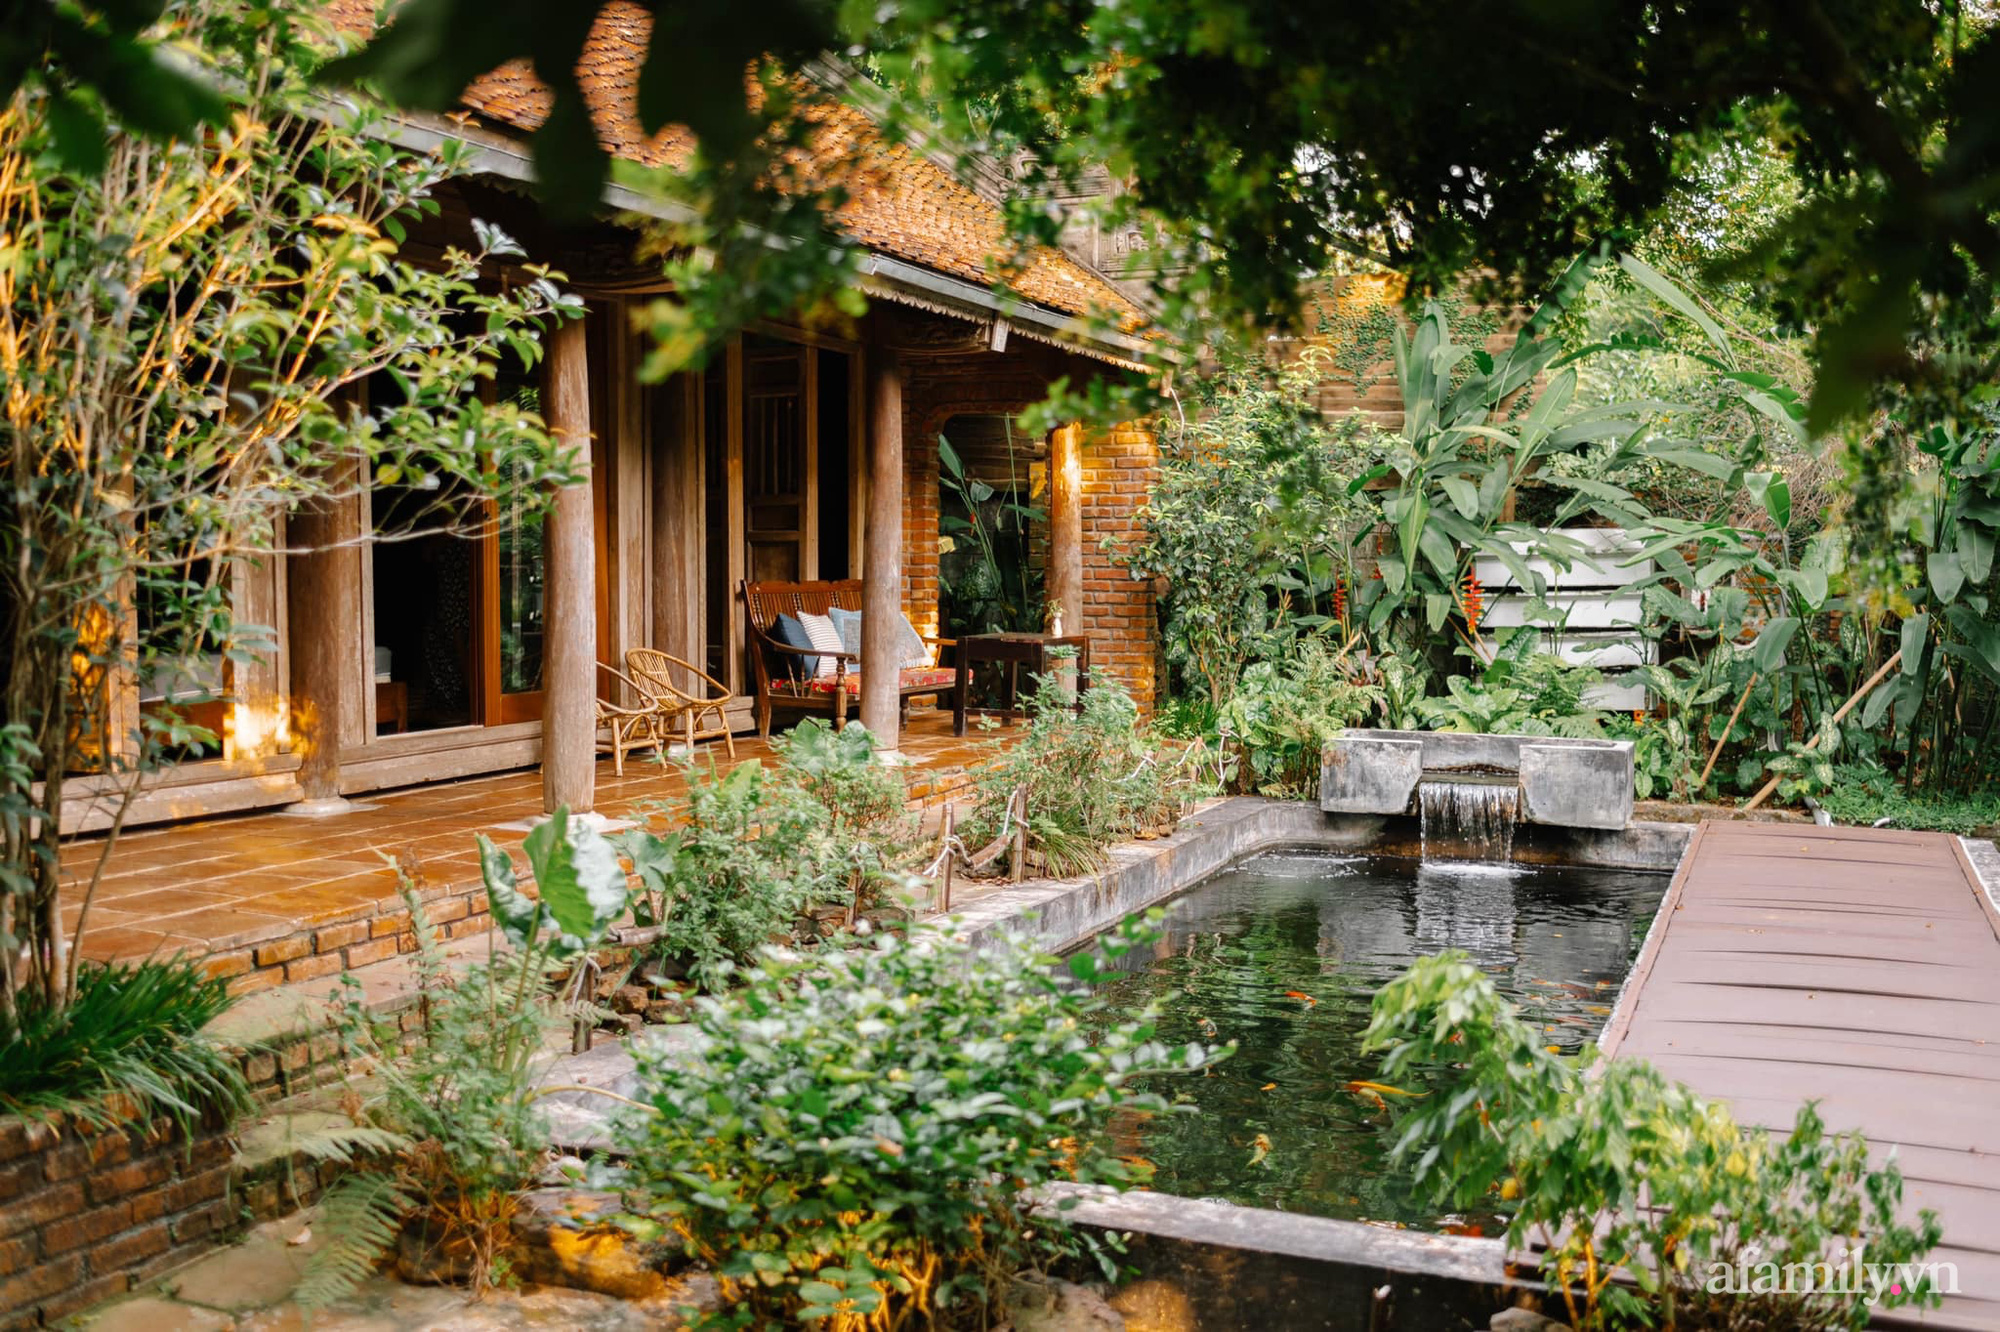 Nhà nhỏ và vườn xanh mát: Cùng thưởng thức hình ảnh về căn nhà thoáng mát và vườn xanh tươi để thưởng thức không khí trong lành được tự nhiên ban tặng. Với môi trường sống khỏe mạnh và tiết kiệm không gian, căn nhà nhỏ này sẽ làm bạn yêu thích cuộc sống đơn giản và gọn gàng hơn bao giờ hết.